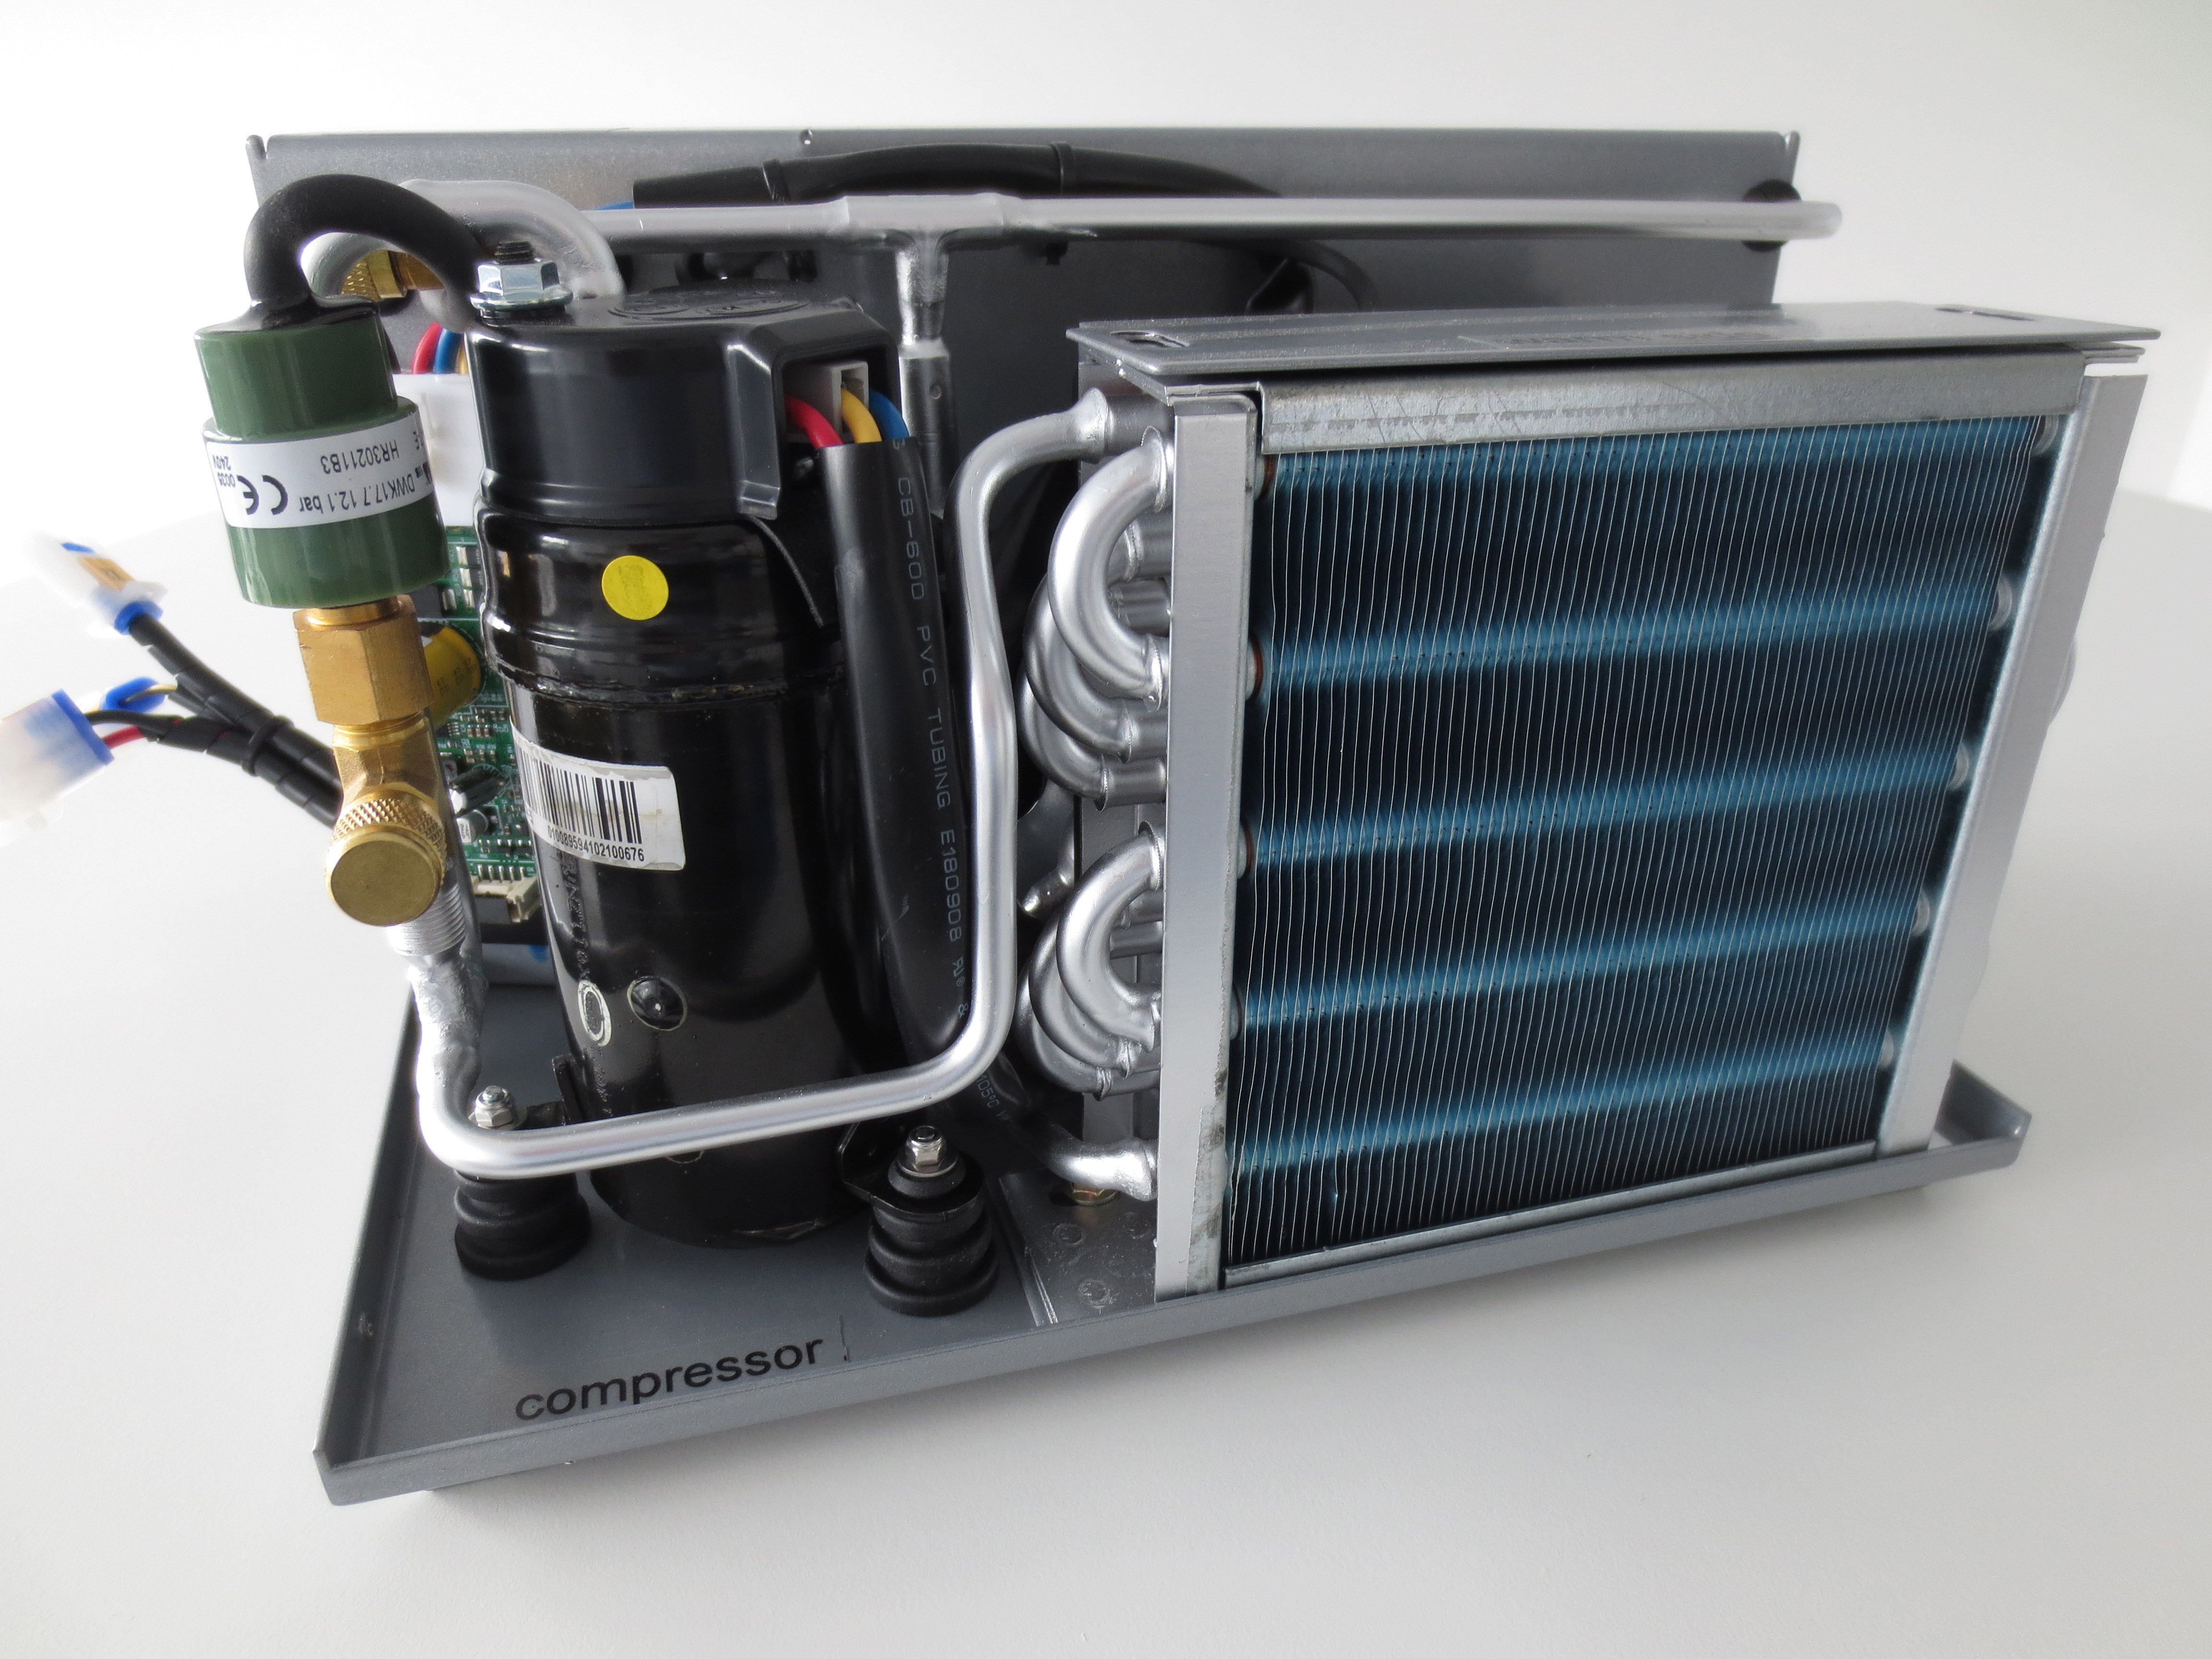 Компрессор охлаждения воздуха. Чиллер Cooling System. Охладитель воды ов-700. Охладитель фреоновый RF 60-35 23.1КВТ. Холодильный агрегат для охлаждения со2.